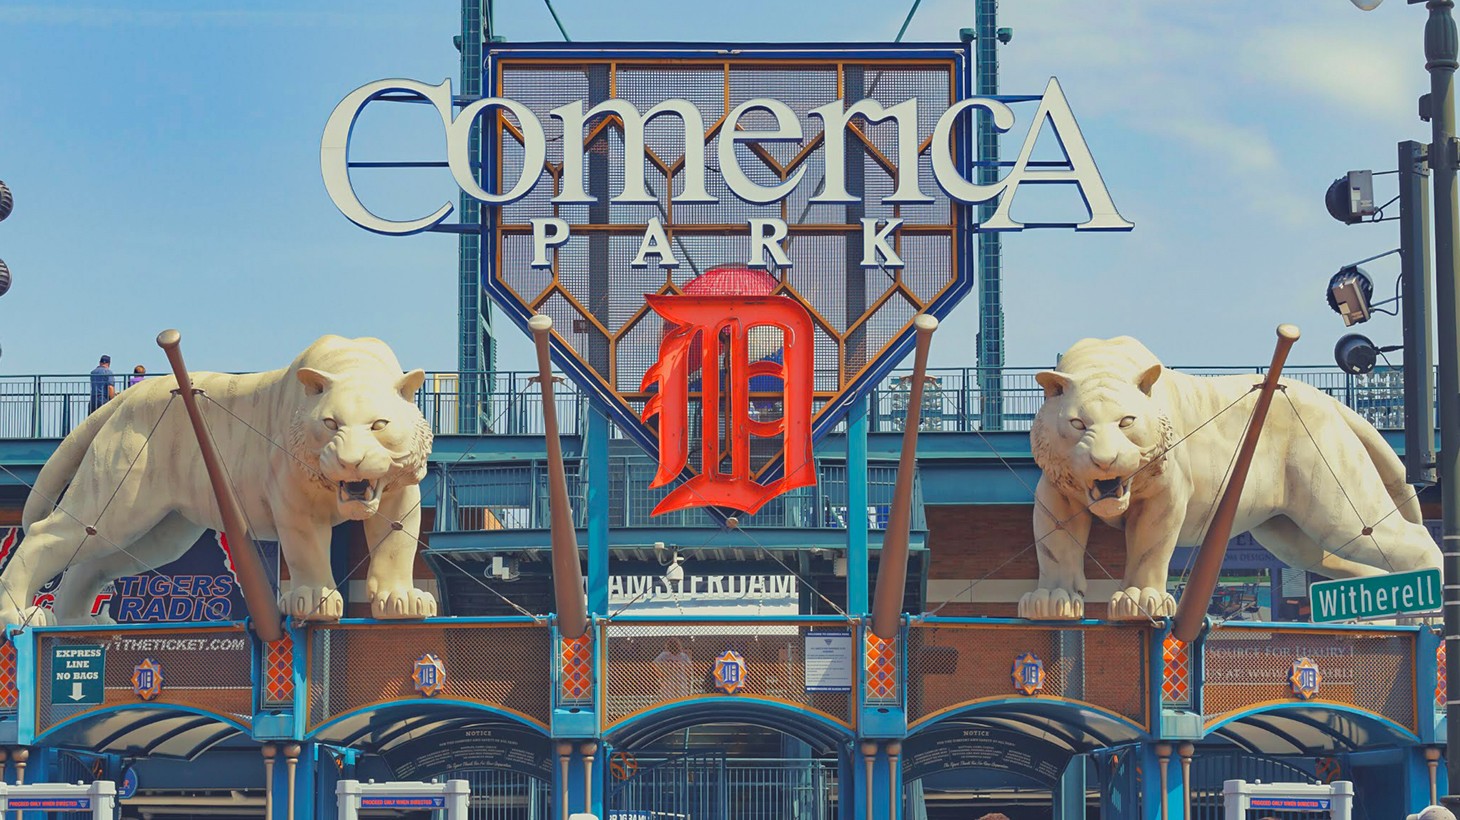 Comerica Park - Detroit Tigers